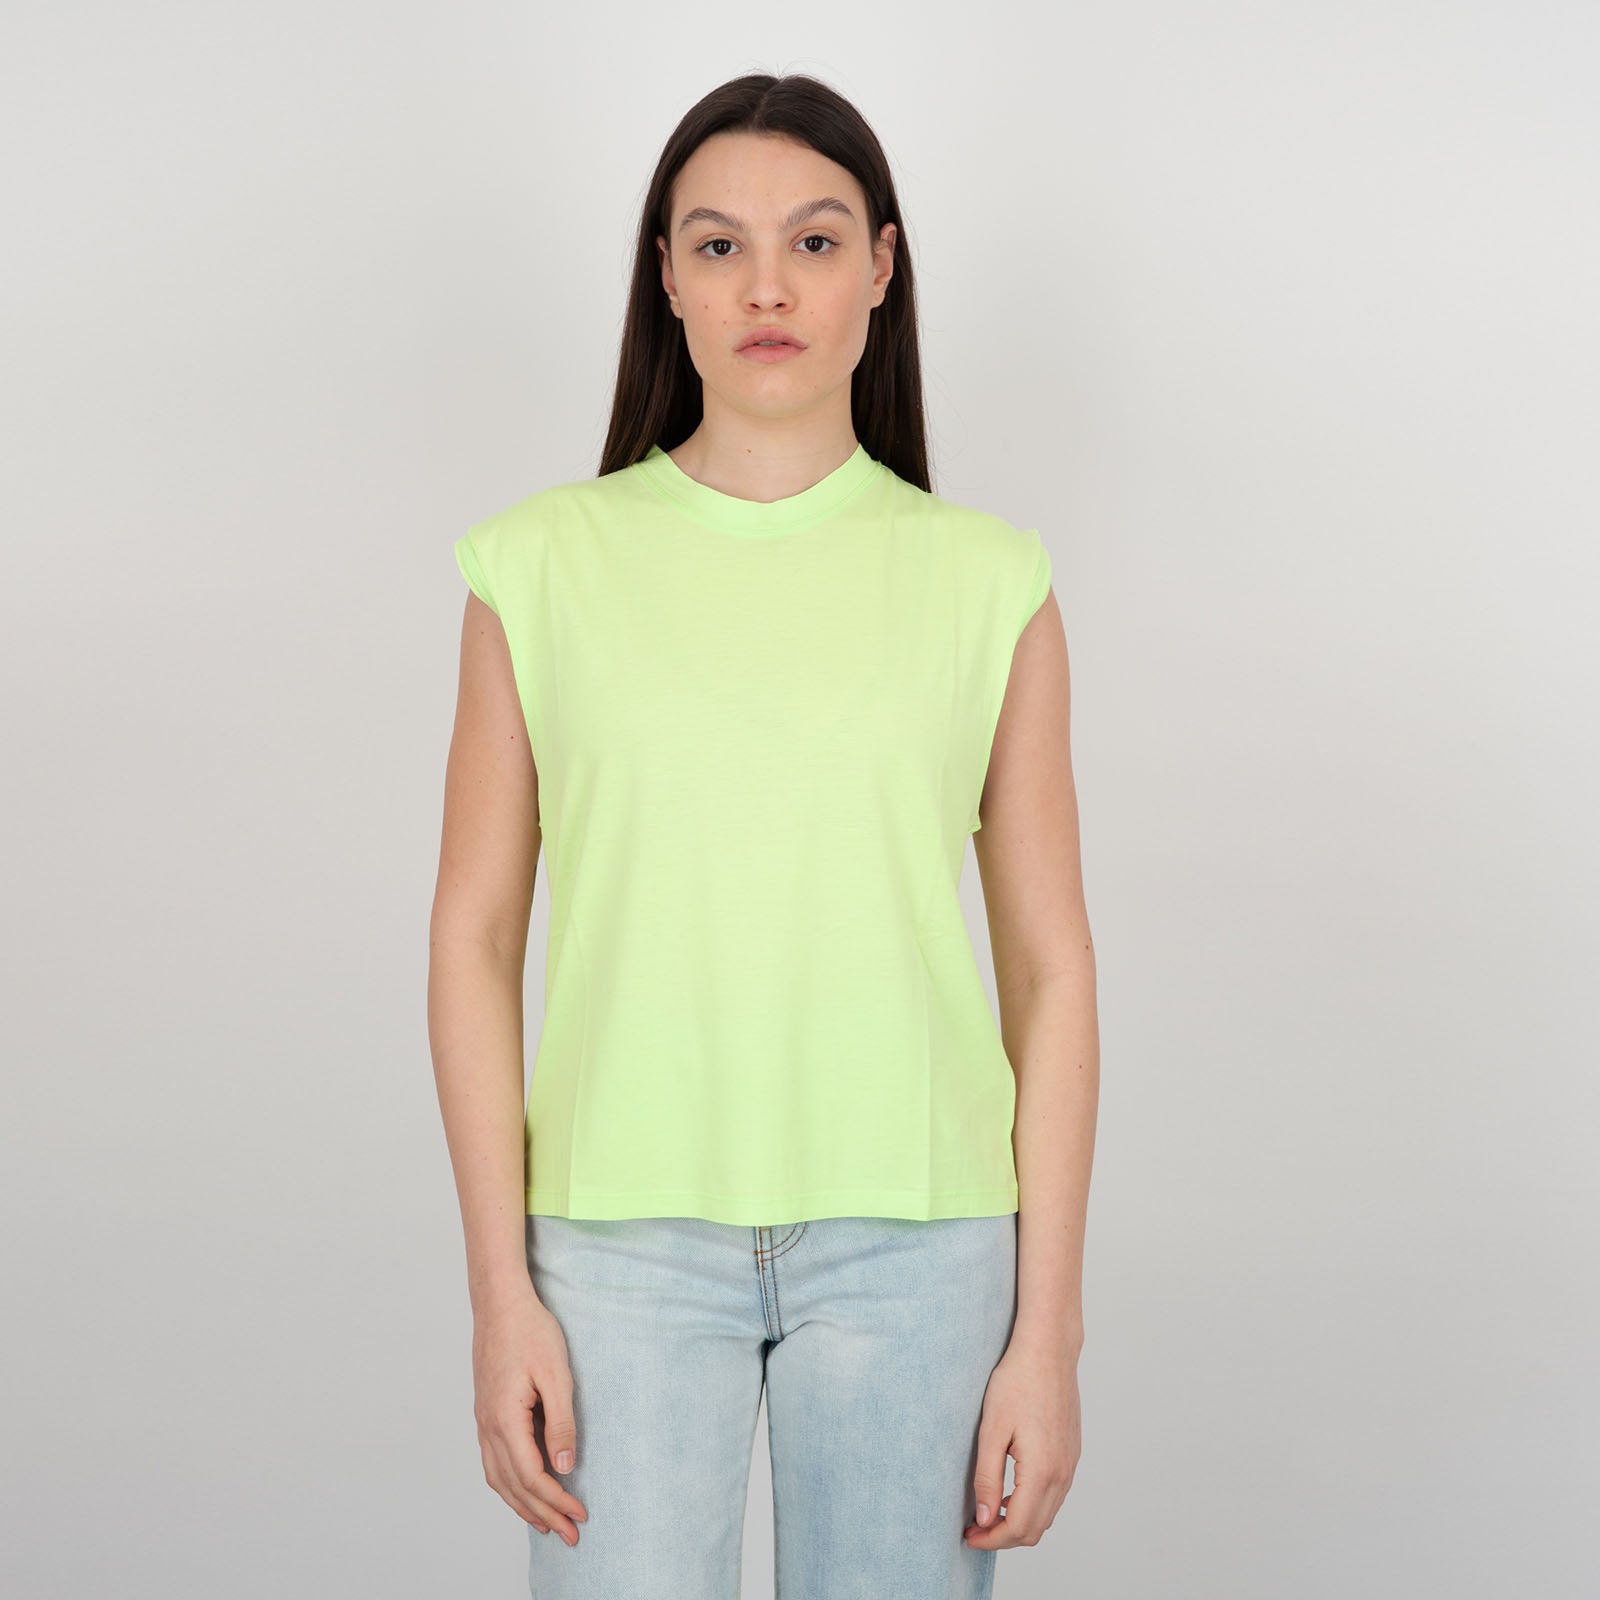 Absolut Cashmere T-shirt Girocollo Suzana Cotone Giallo Fluo - 5